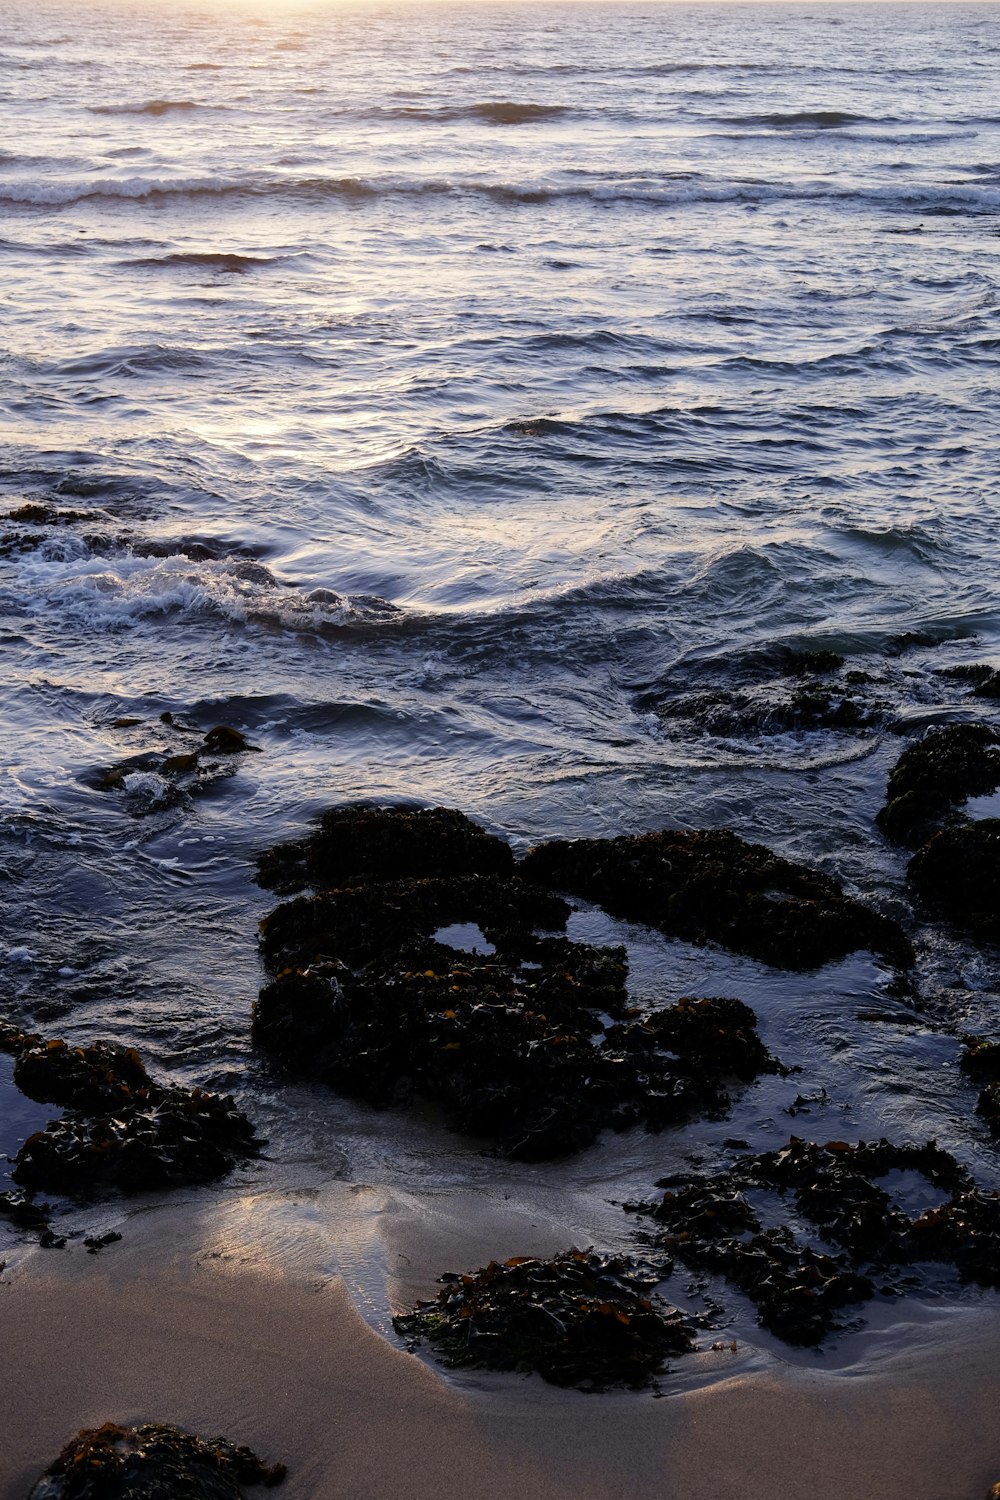 black rocks on sea water during daytime